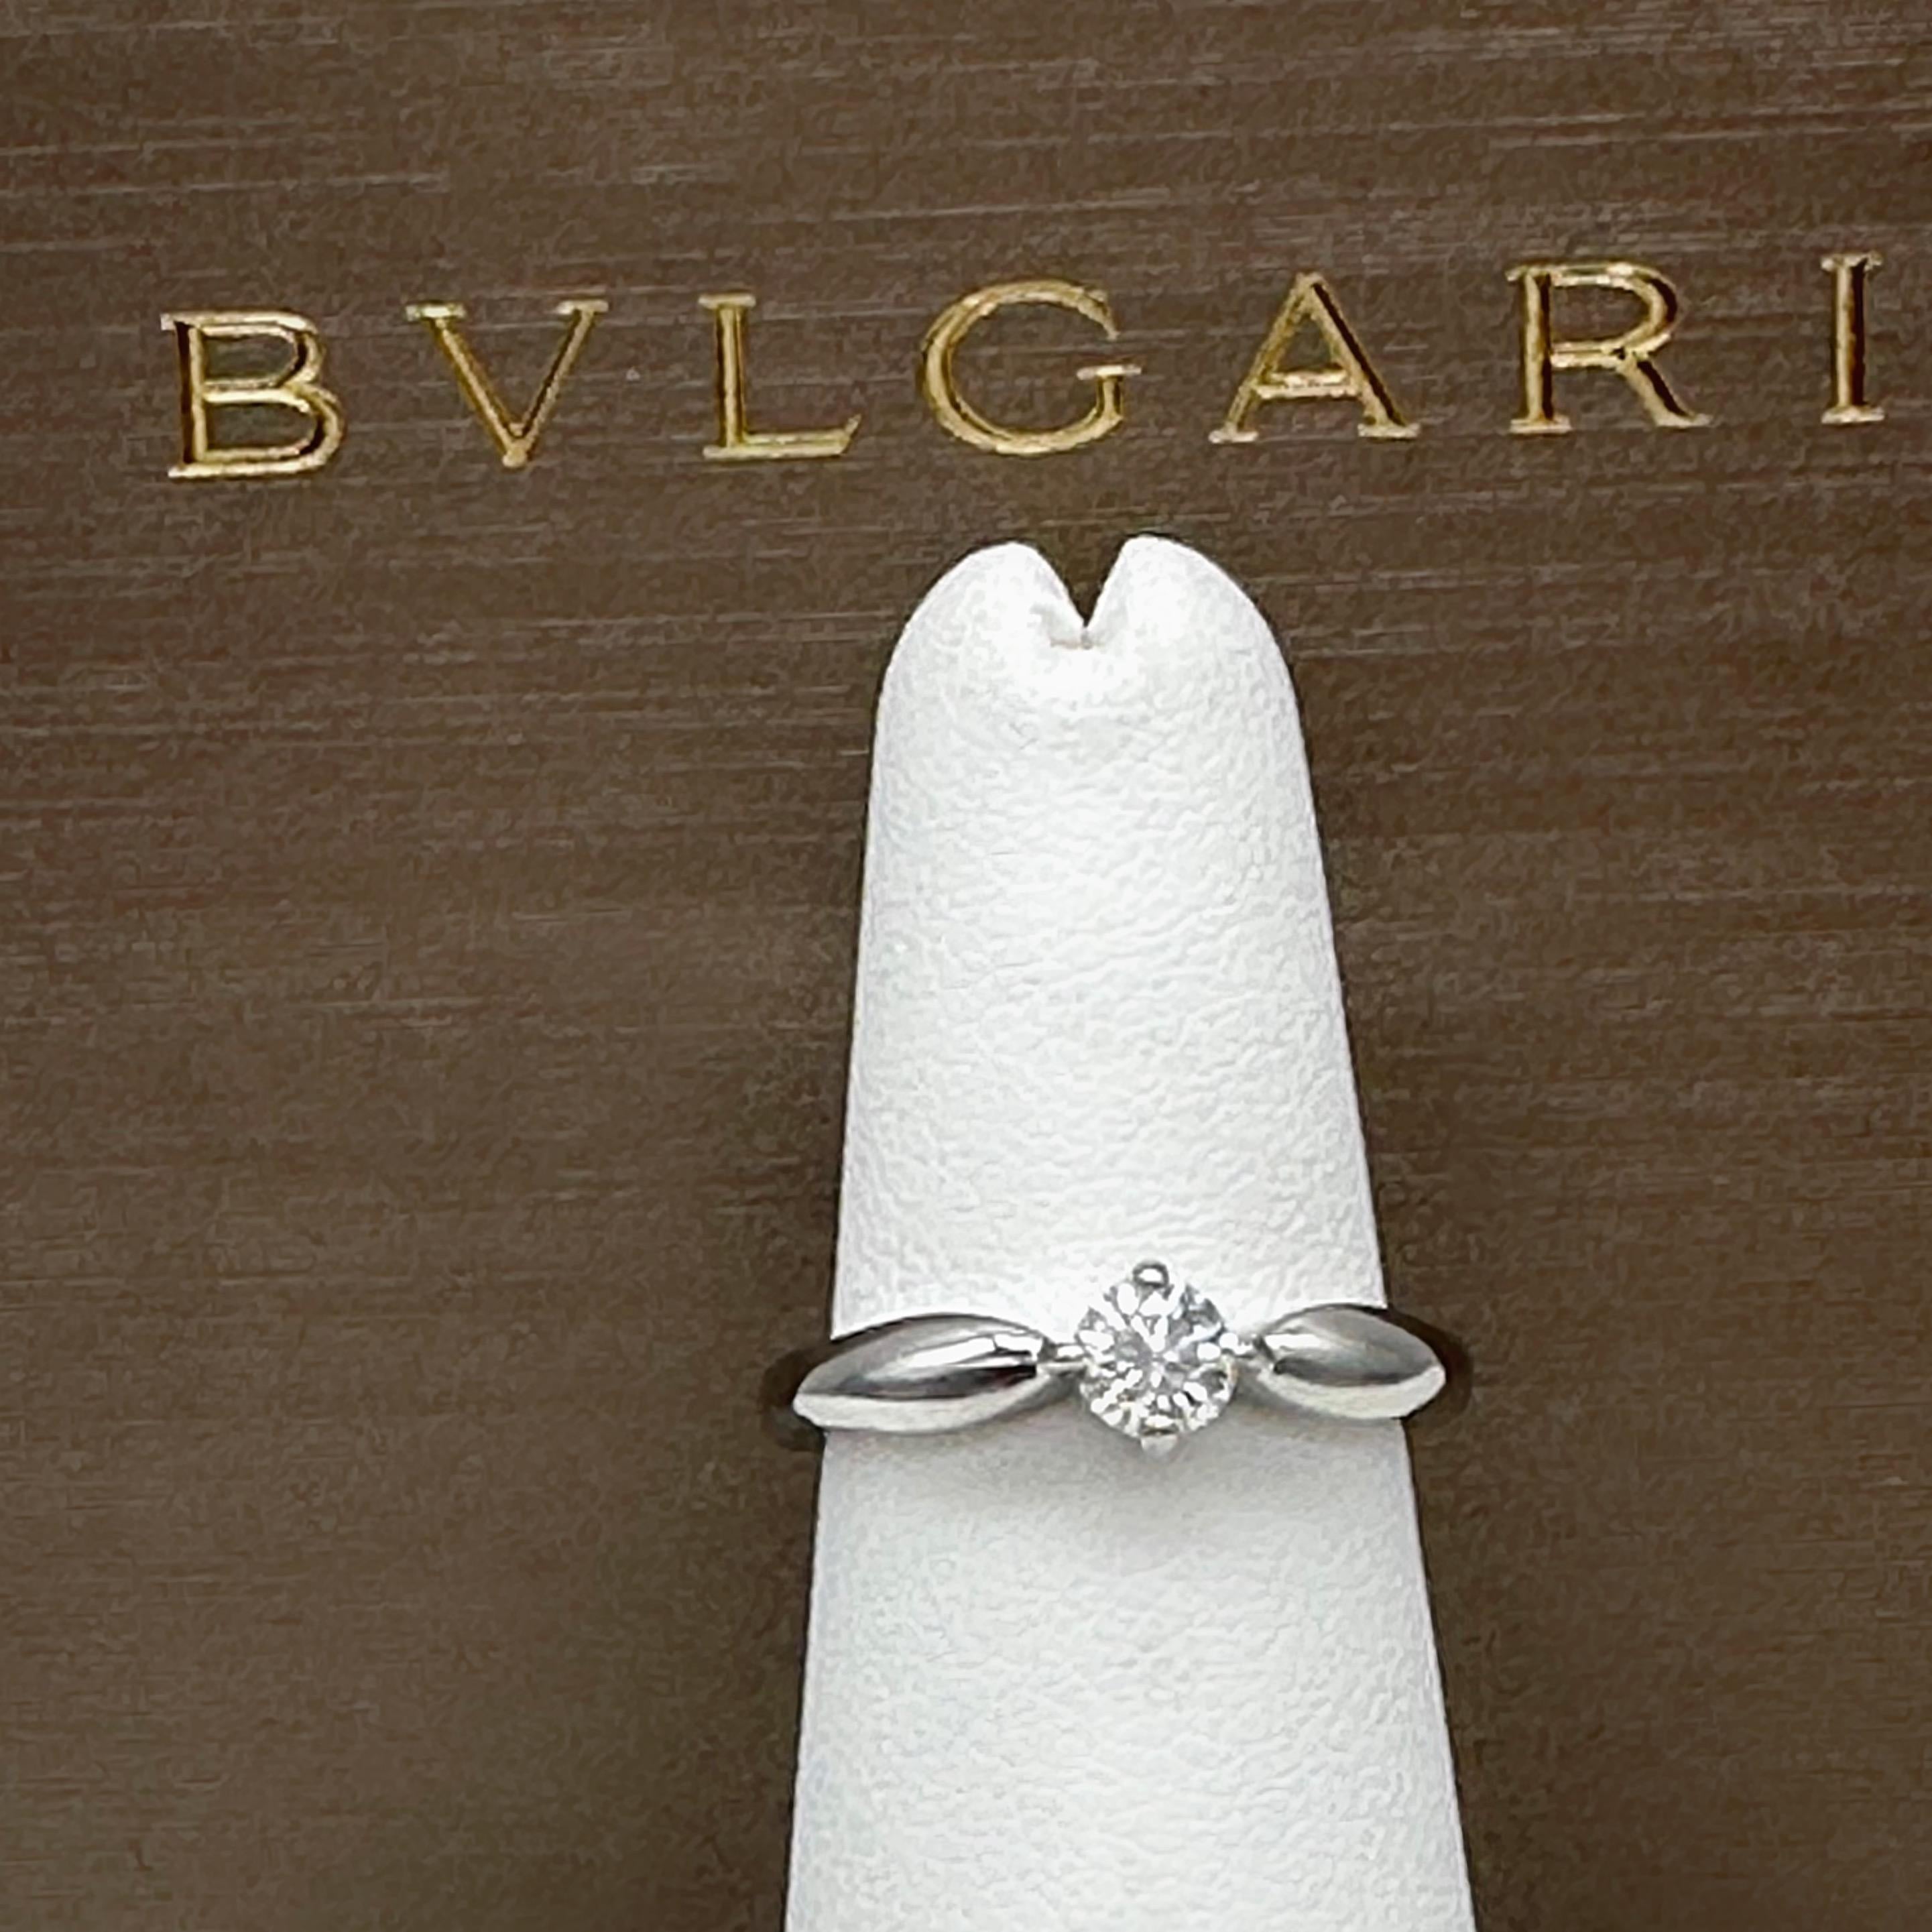 Bvlgari Dedicata a Venezia Torcello Round Diamond 0.30 Tcw Engagement Ring For Sale 11